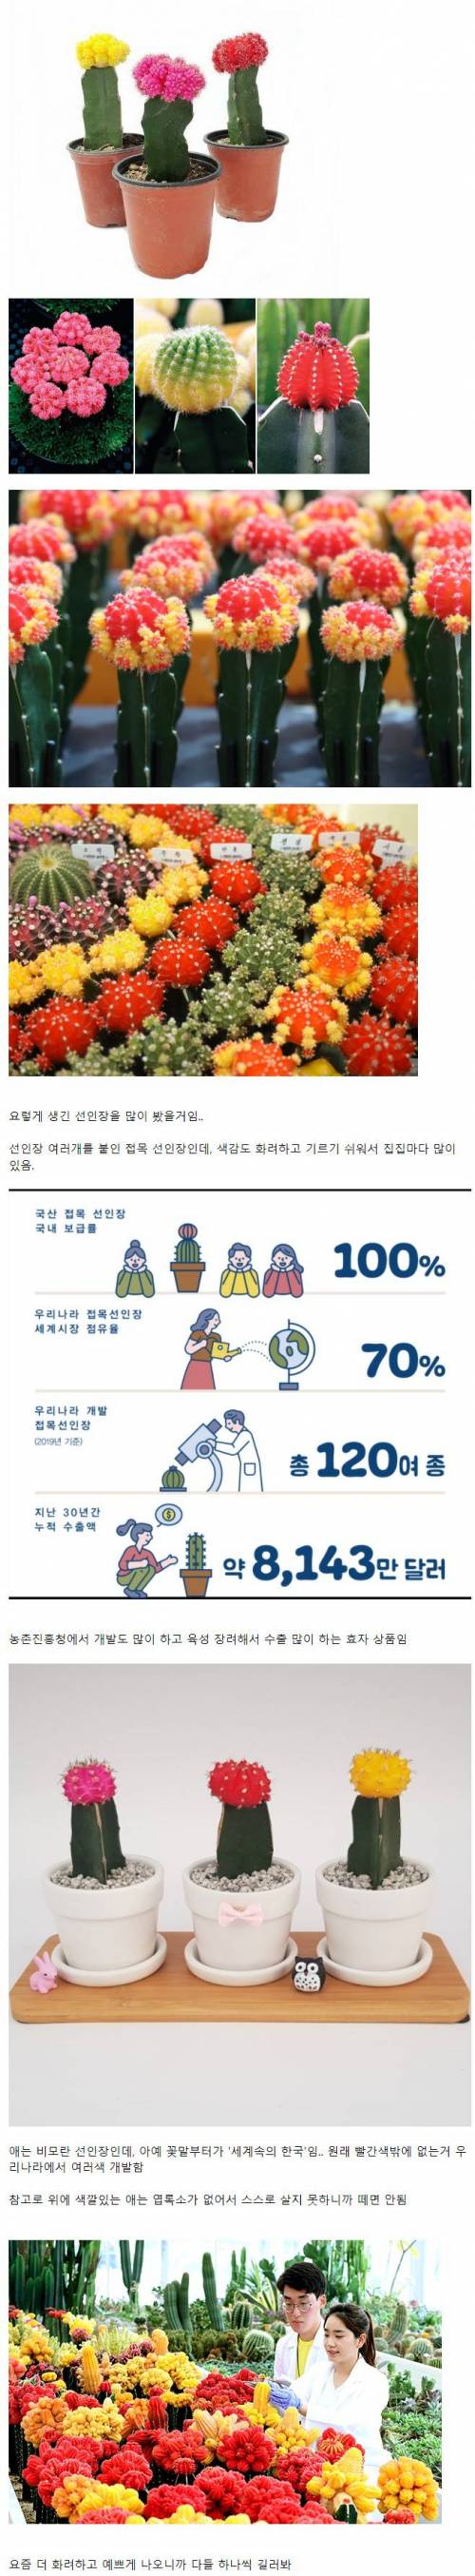 5 세계 시장 70_ 점유하는 한국산 식물.jpg